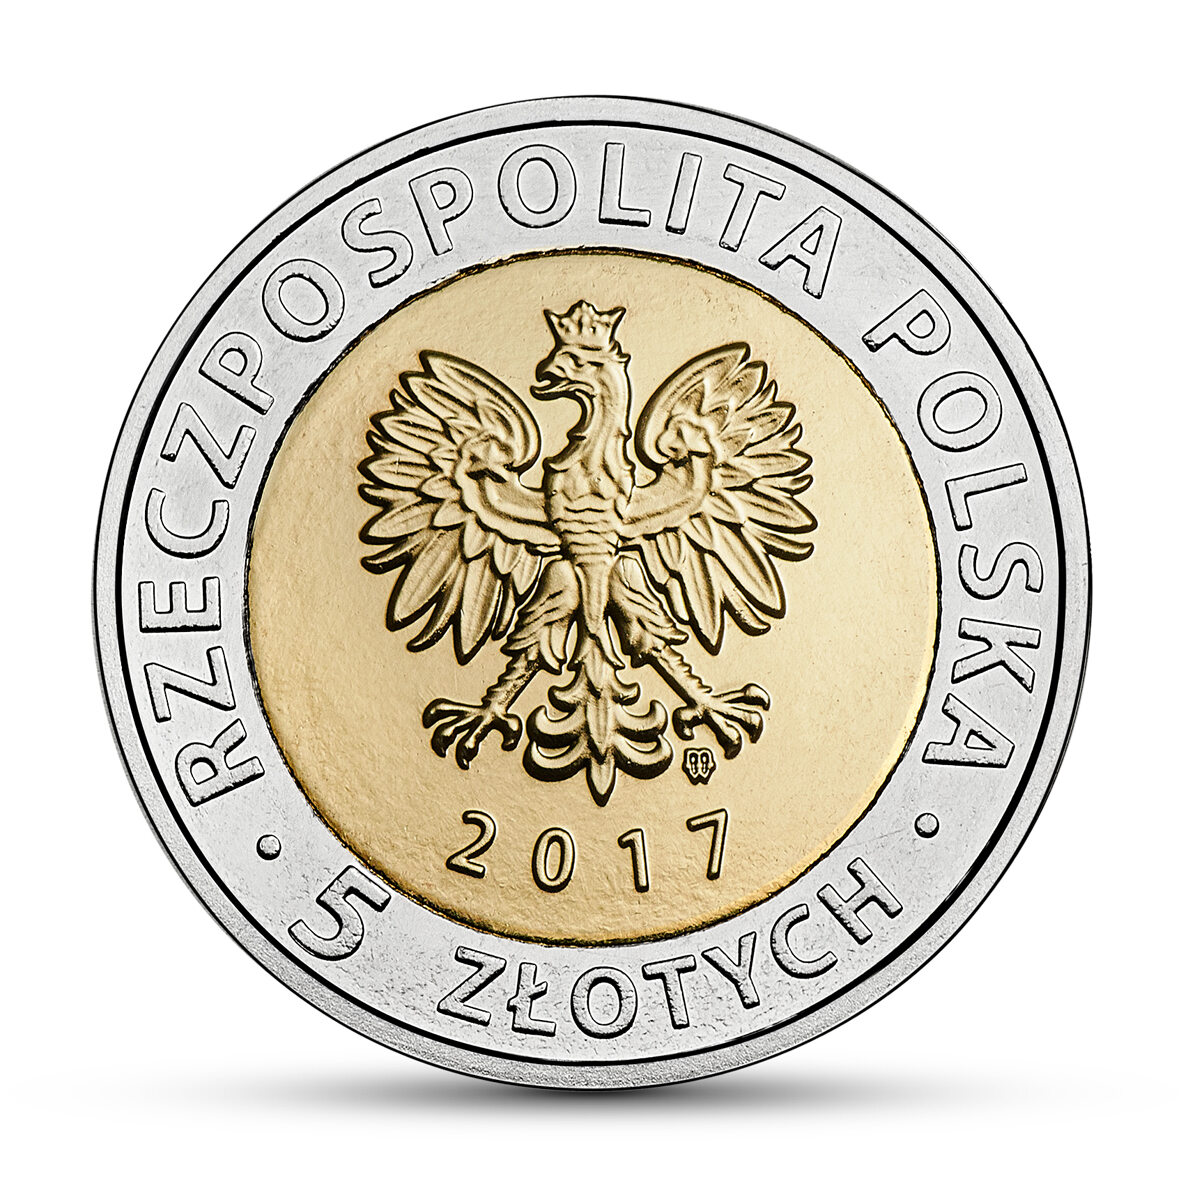 Moneta z serii  "Odkryj Polskę – Centralny Okręg Przemysłowy" Specjalne monety o nominale 5 złotych są w obiegu od 15 listopada 2017 roku